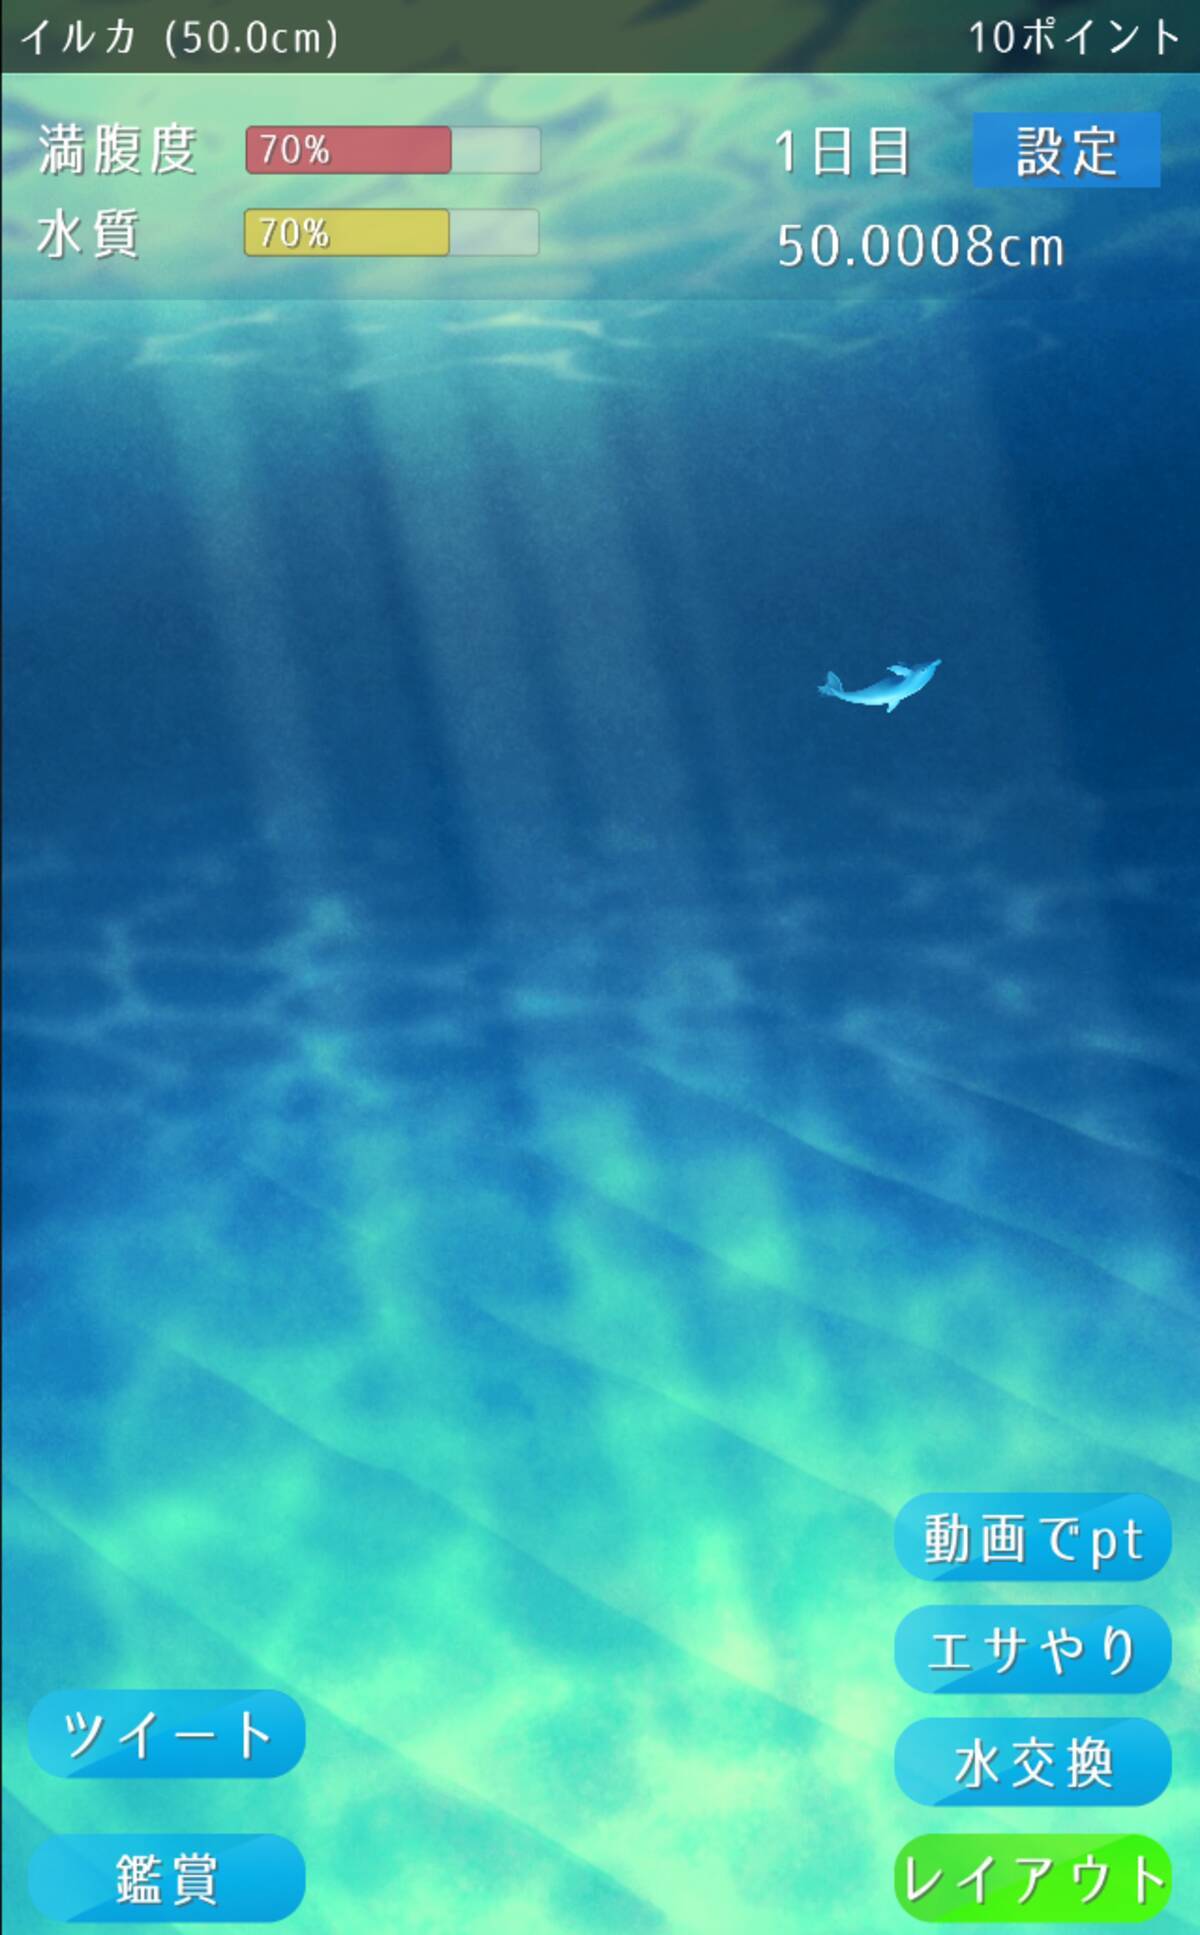 水中の世界に癒やされる イルカ育成ゲーム 16年12月12日 エキサイトニュース